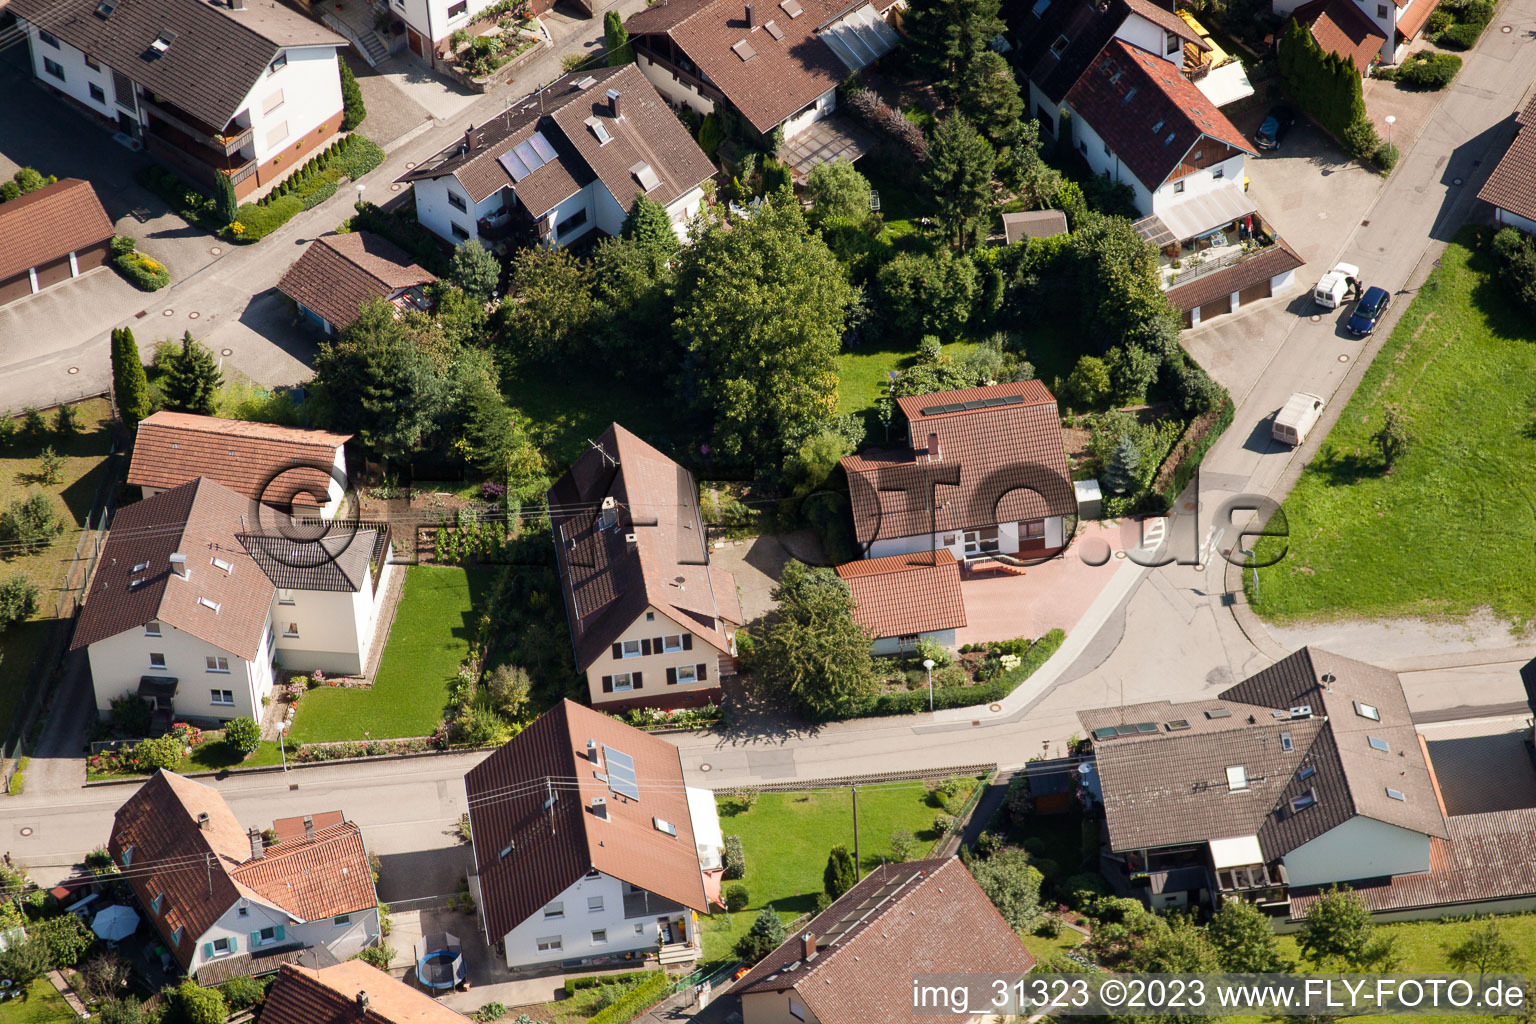 Ortsteil Gallenbach in Baden-Baden im Bundesland Baden-Württemberg, Deutschland aus der Drohnenperspektive